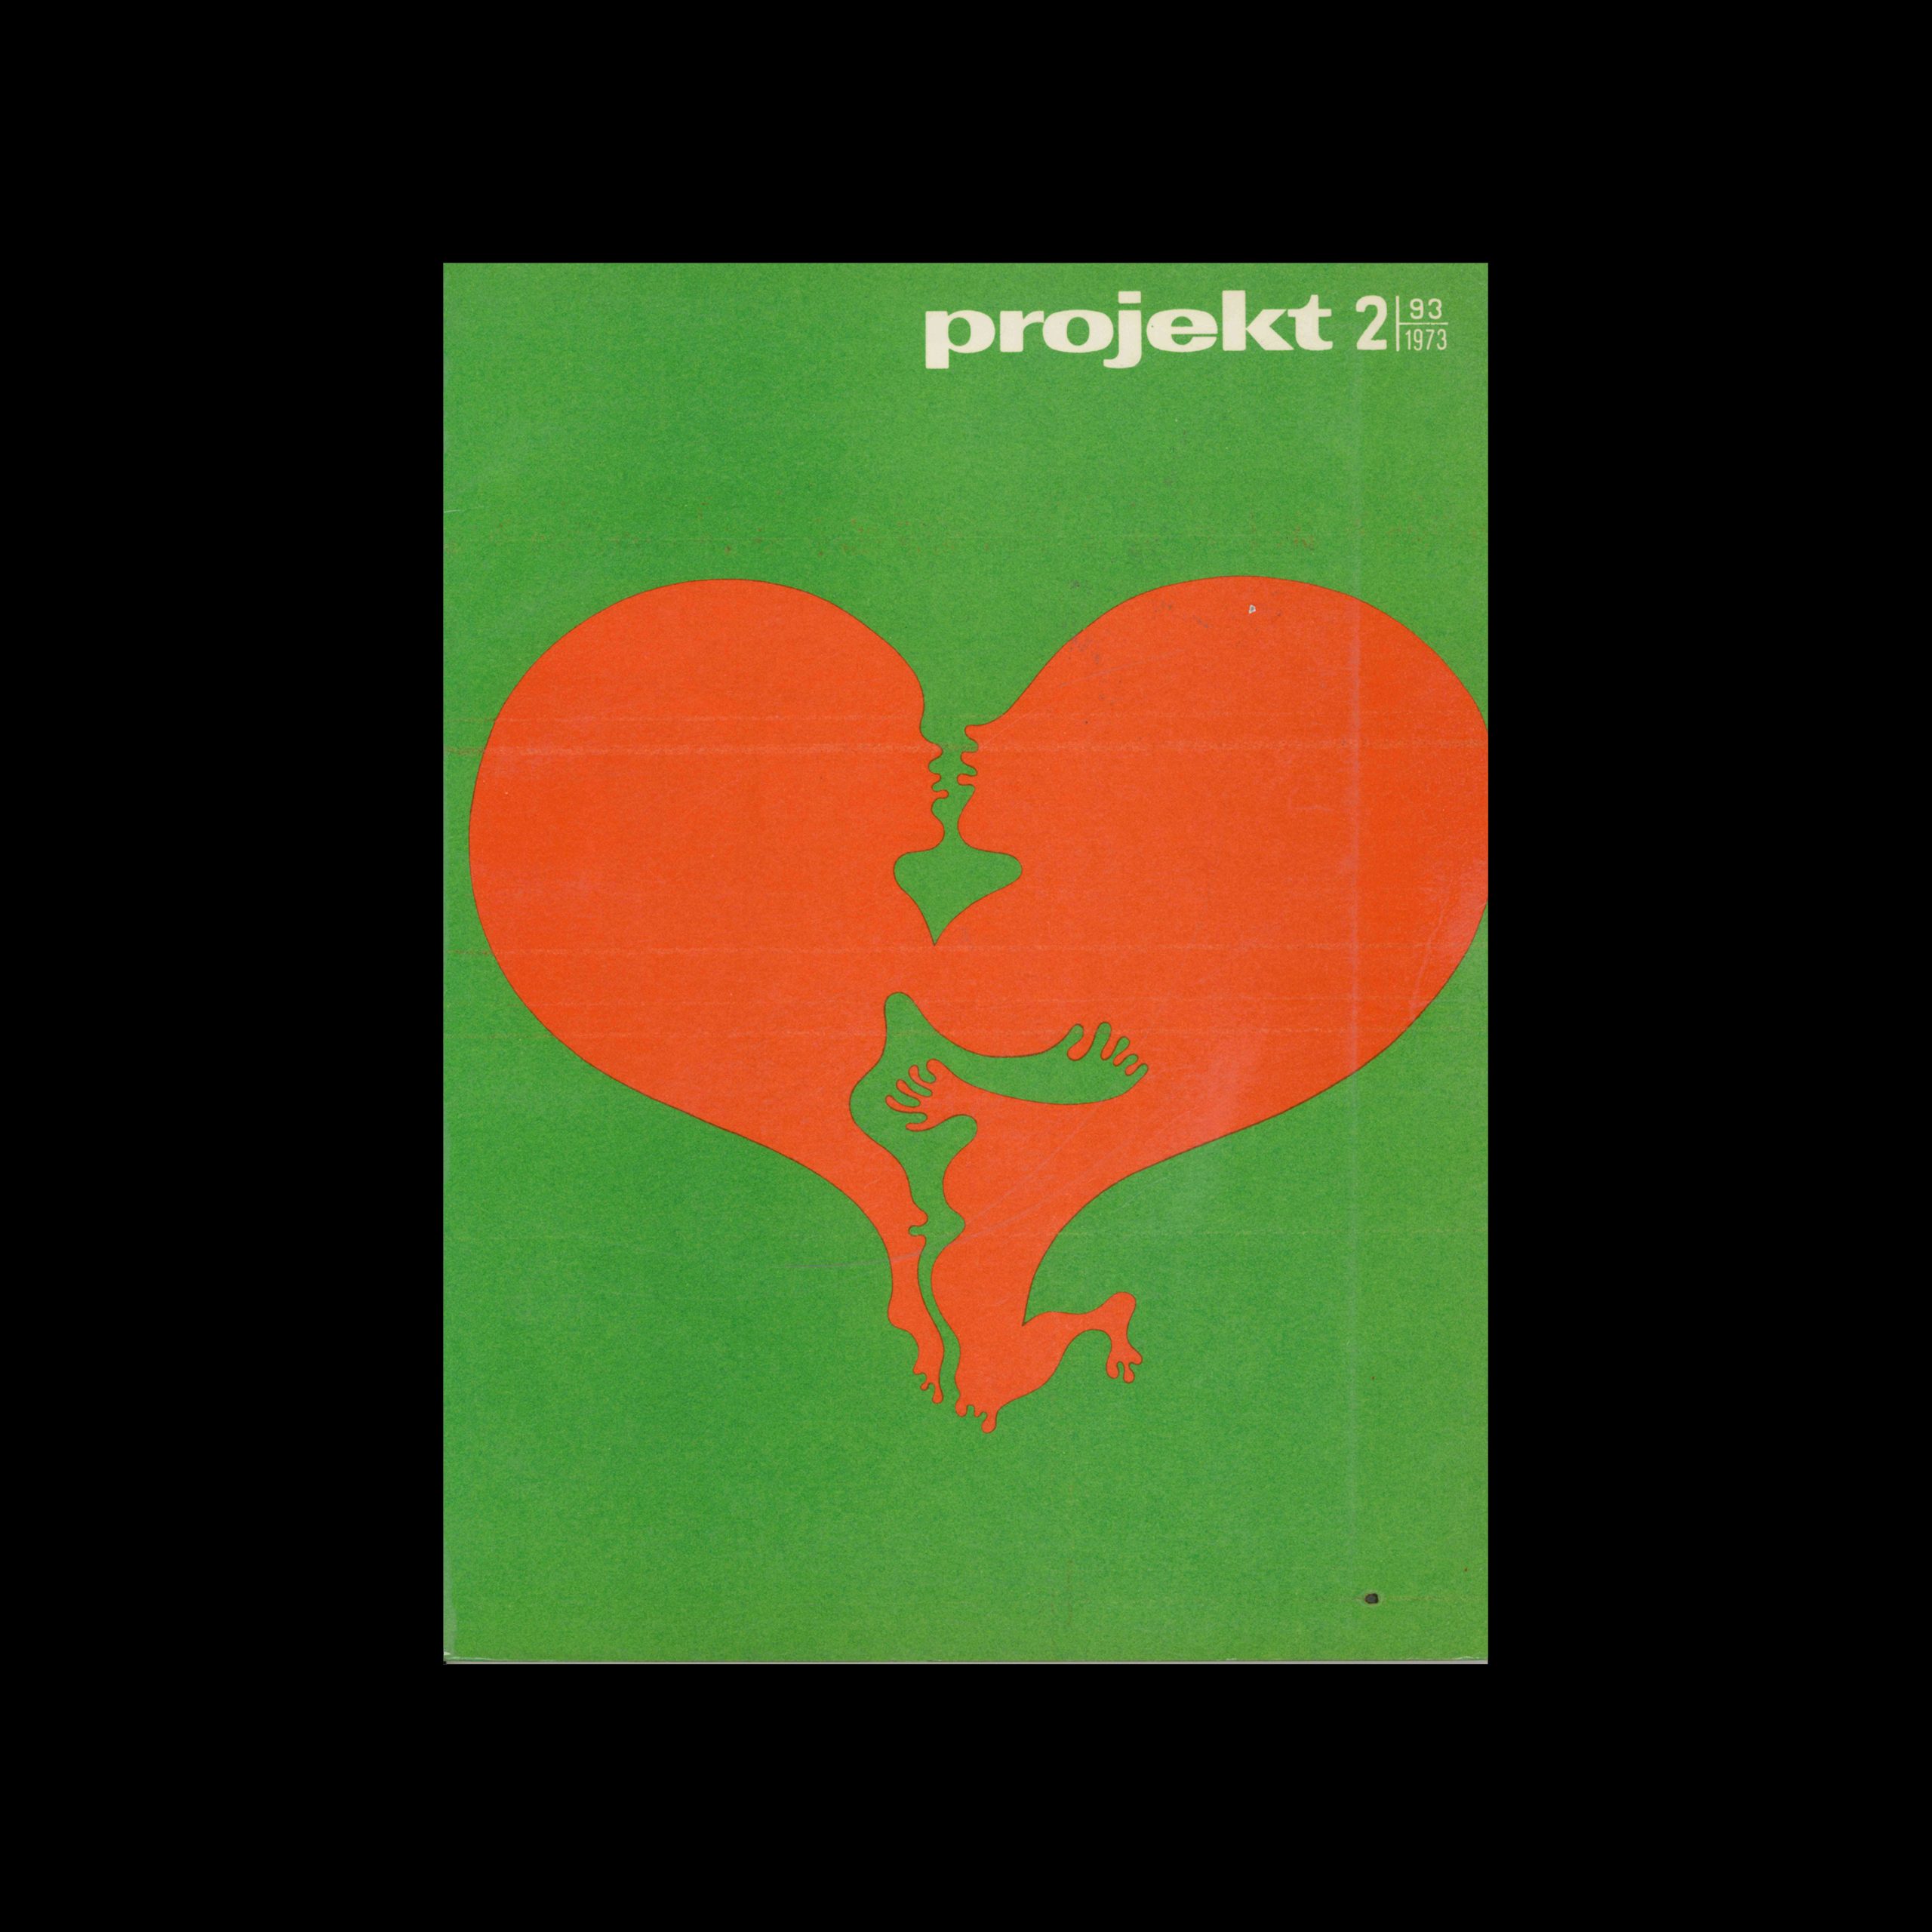 Projekt 93, 2, 1973. Cover design by Jan Dobkowski